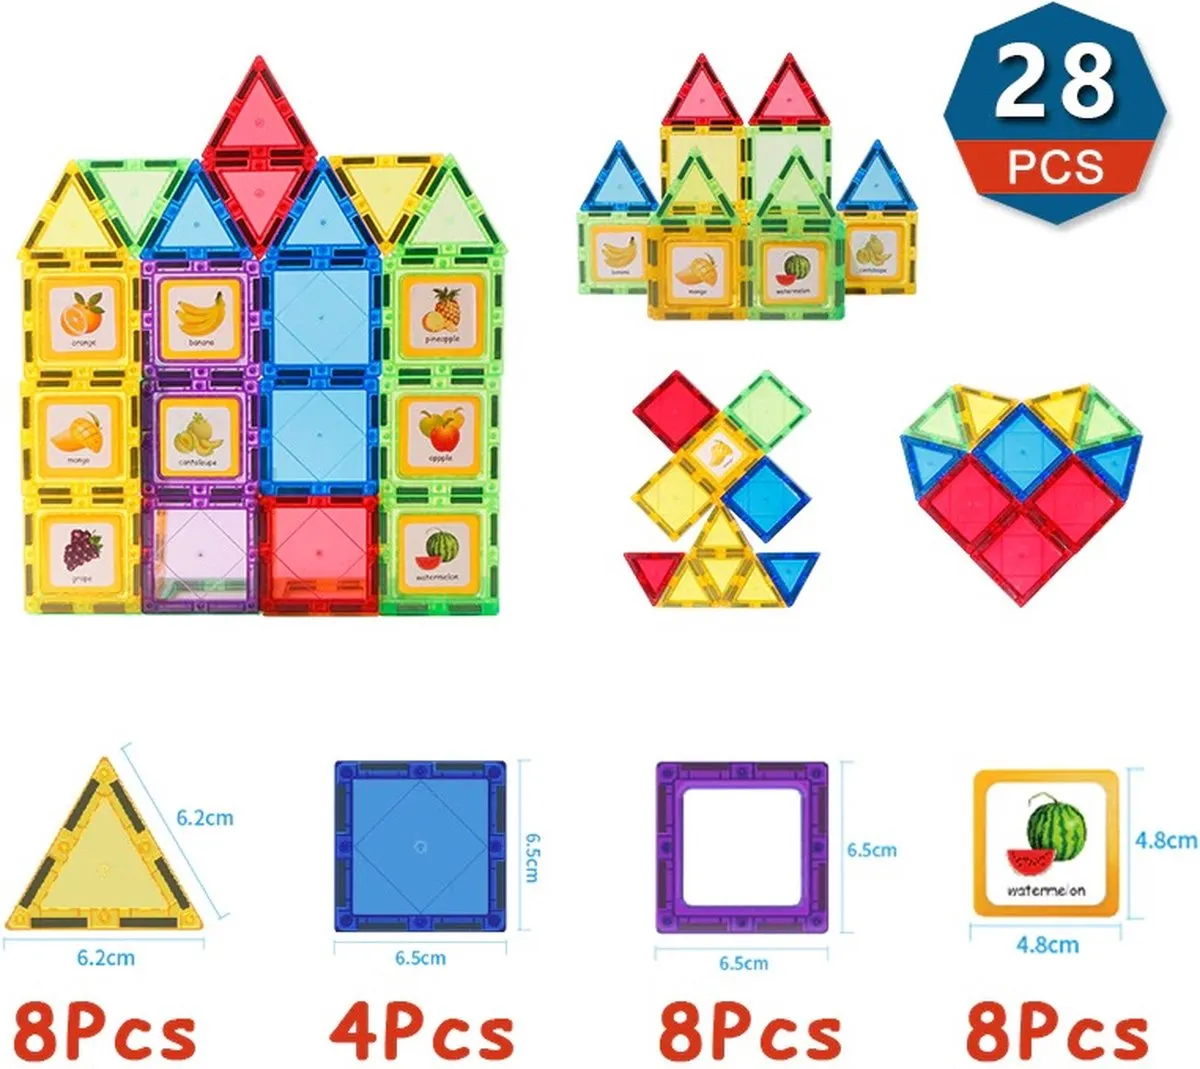 Magnetische Tegels - 28 stuks - Alternatief Magna-Tiles - Clear Colors - Metropolis speelgoed